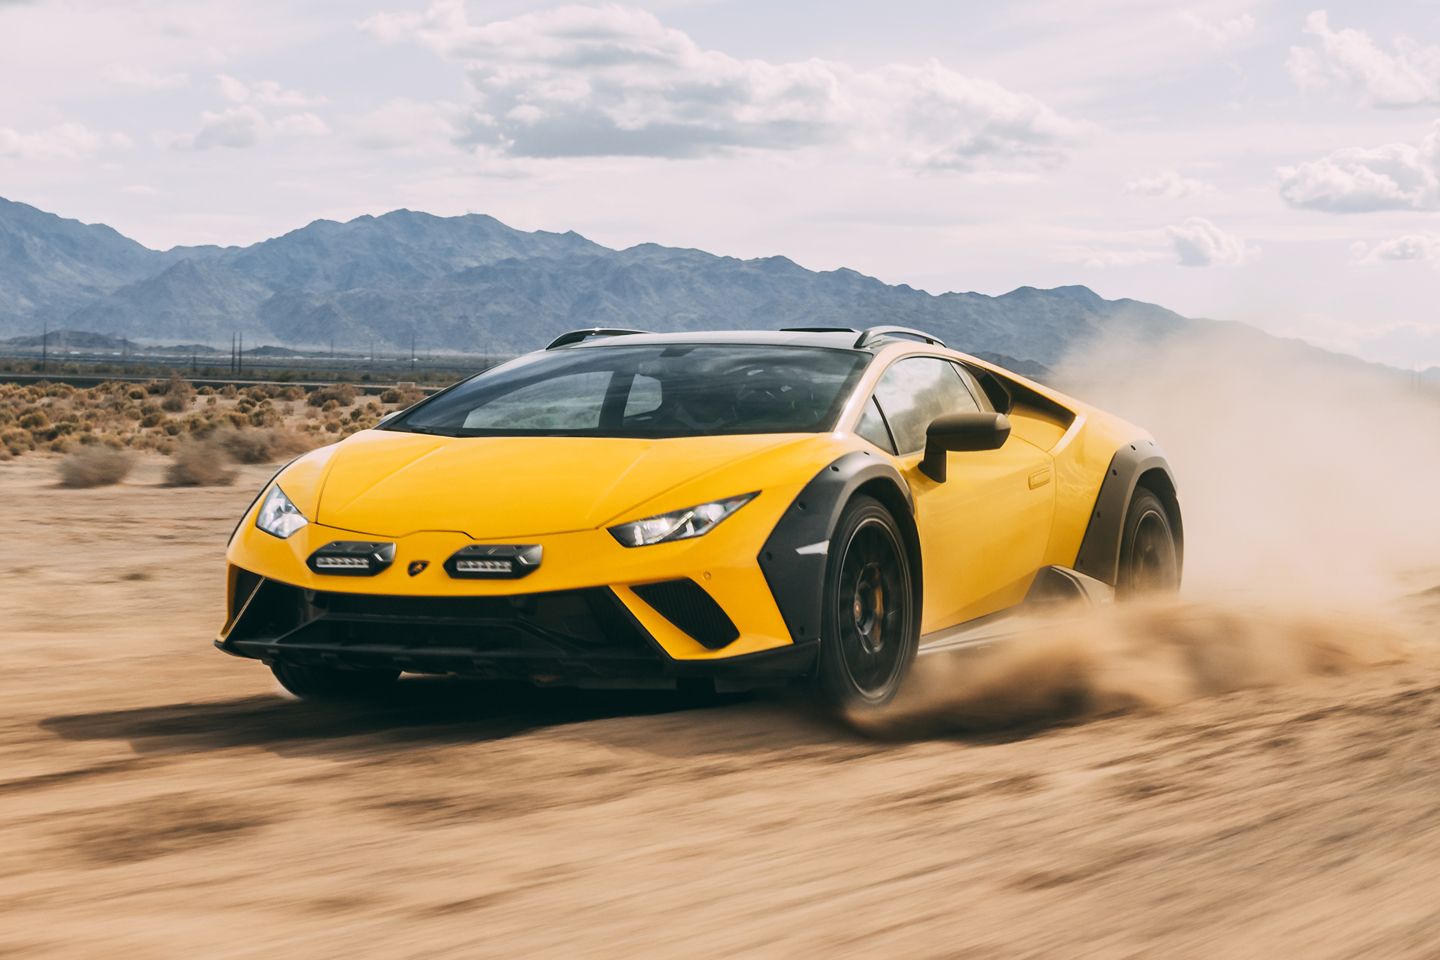 2023 Lamborghini Huracán Tecnica Review: A Magnificent V10